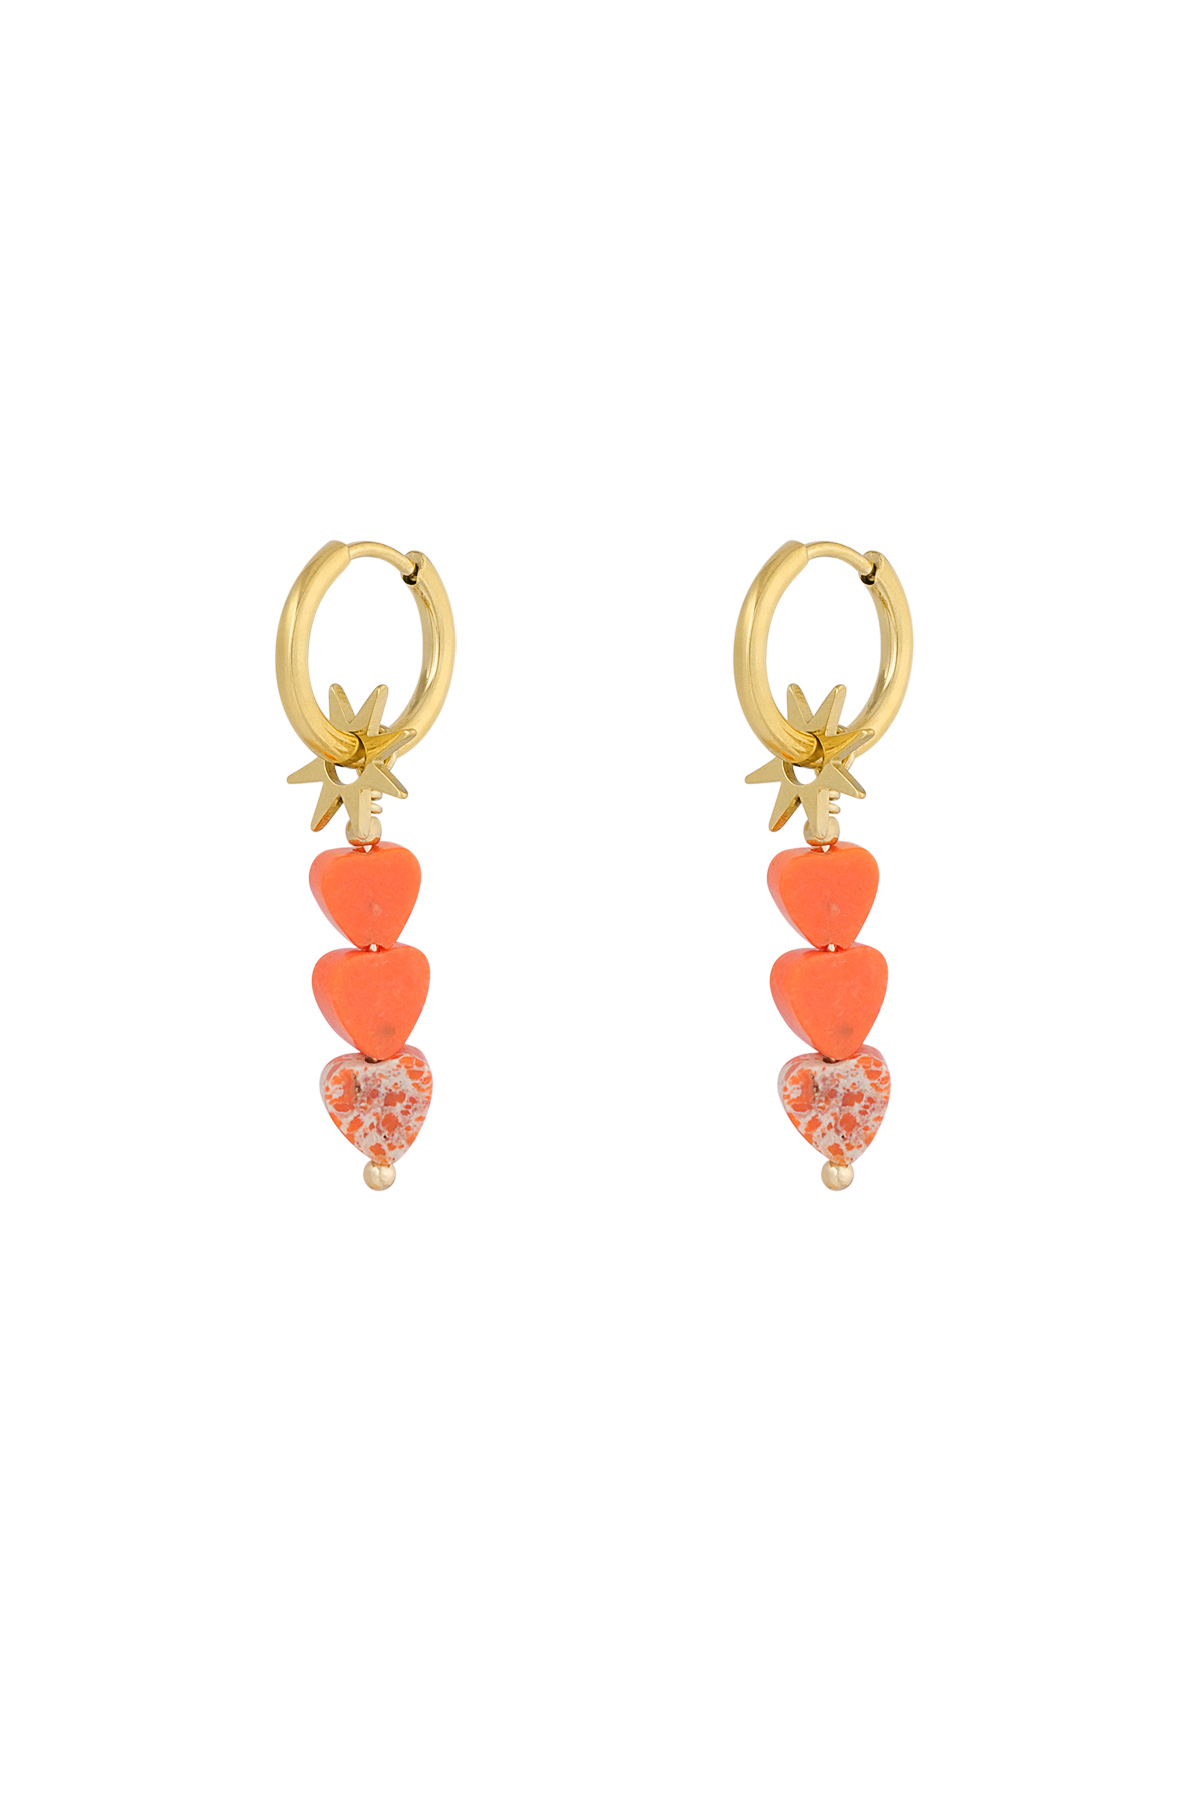 Earrings triple heart star - orange gold